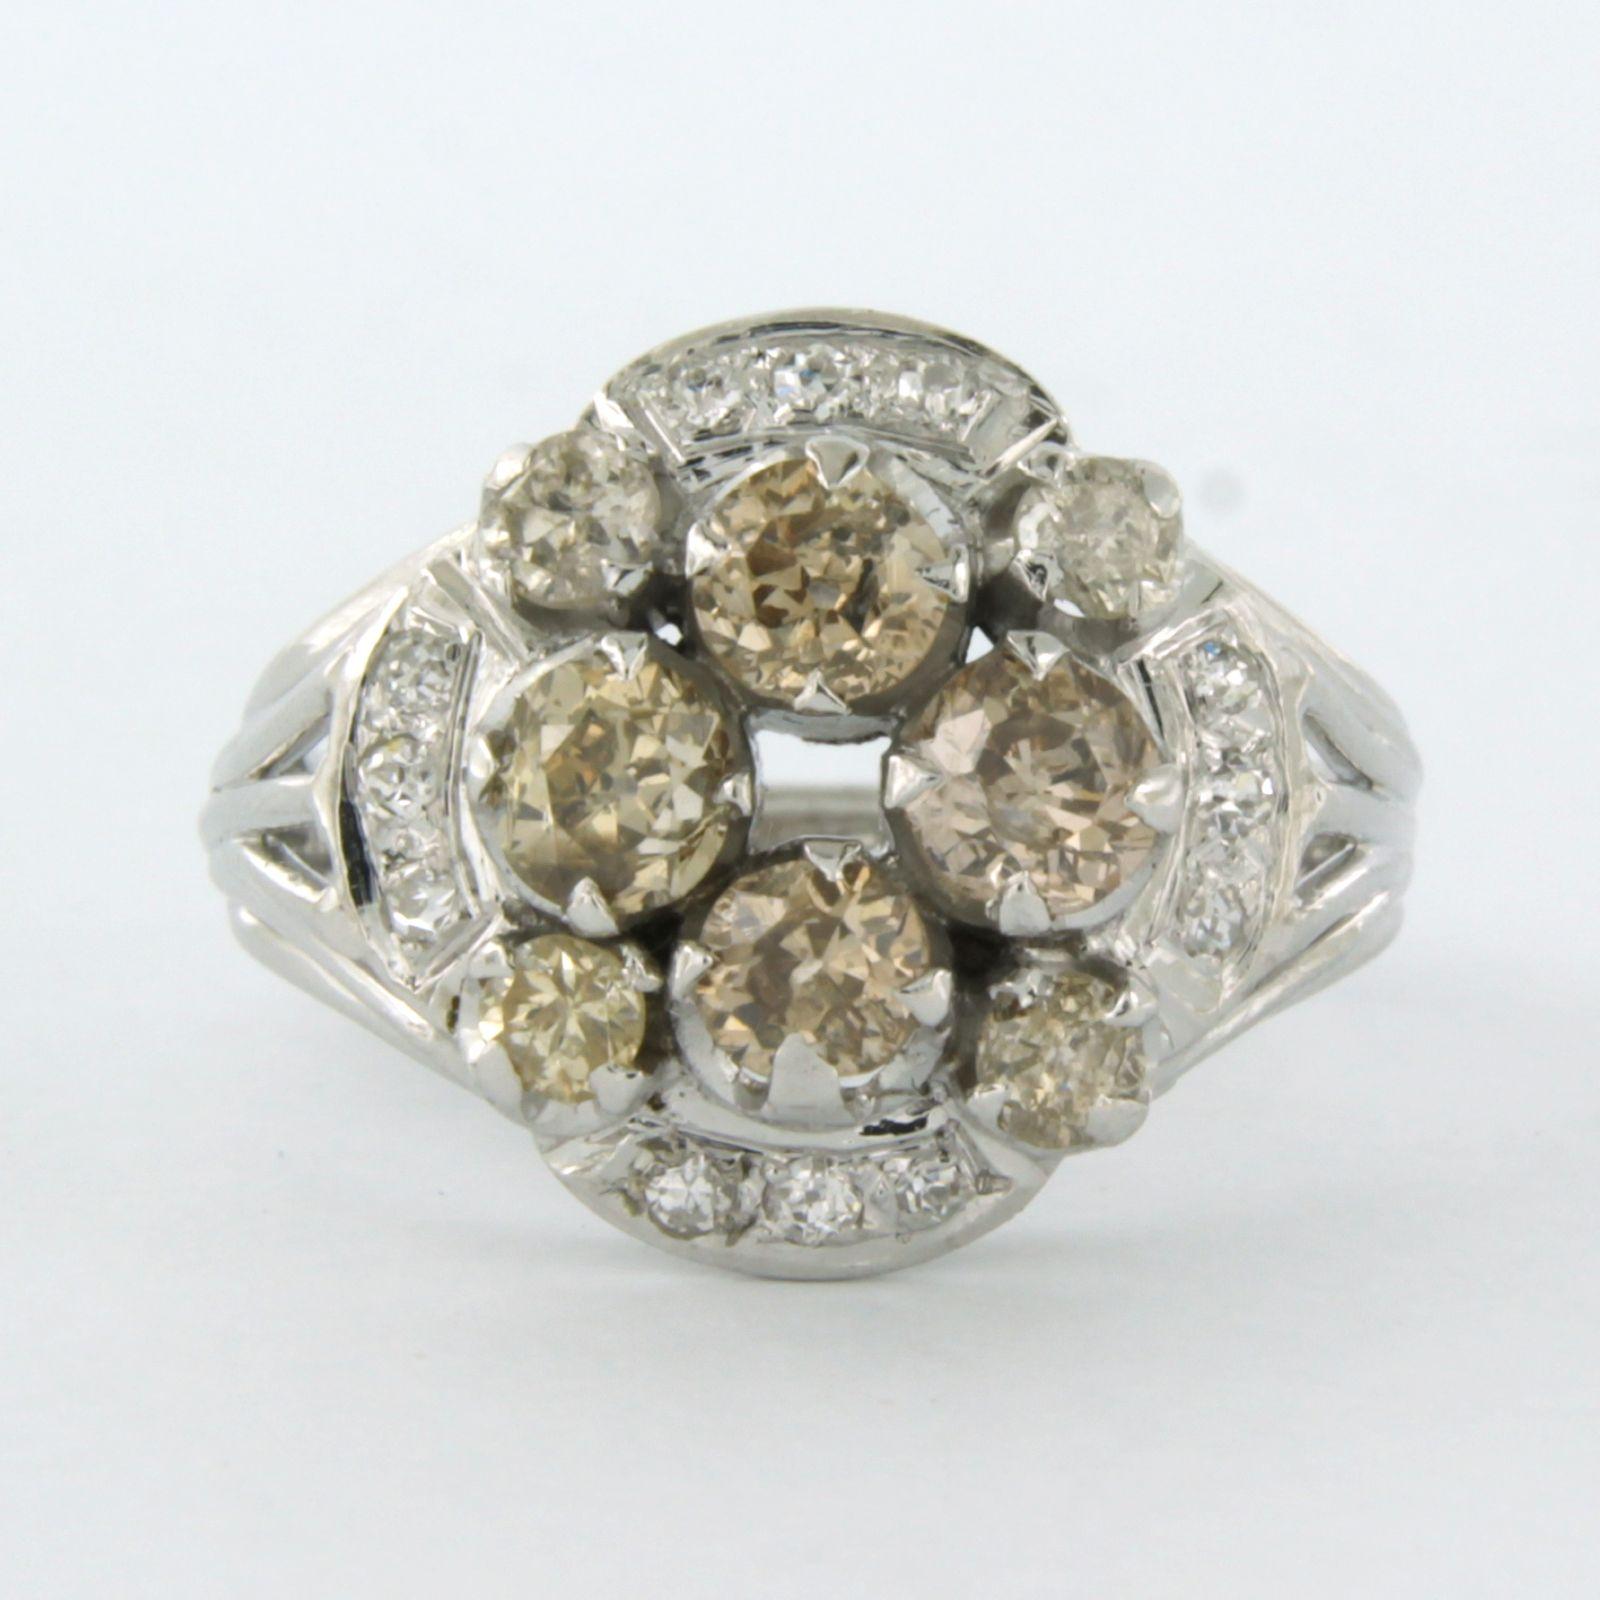 Anillo de oro blanco de 18 quilates con diamante talla mina vieja y talla única de hasta. 2,40 ct - Champán, K/L, F/G - Pique, VS/SI - tamaño del anillo EE.UU. 8,75 - UE. 18.75(59)

Descripción detallada

la parte superior del anillo mide 1,6 cm de